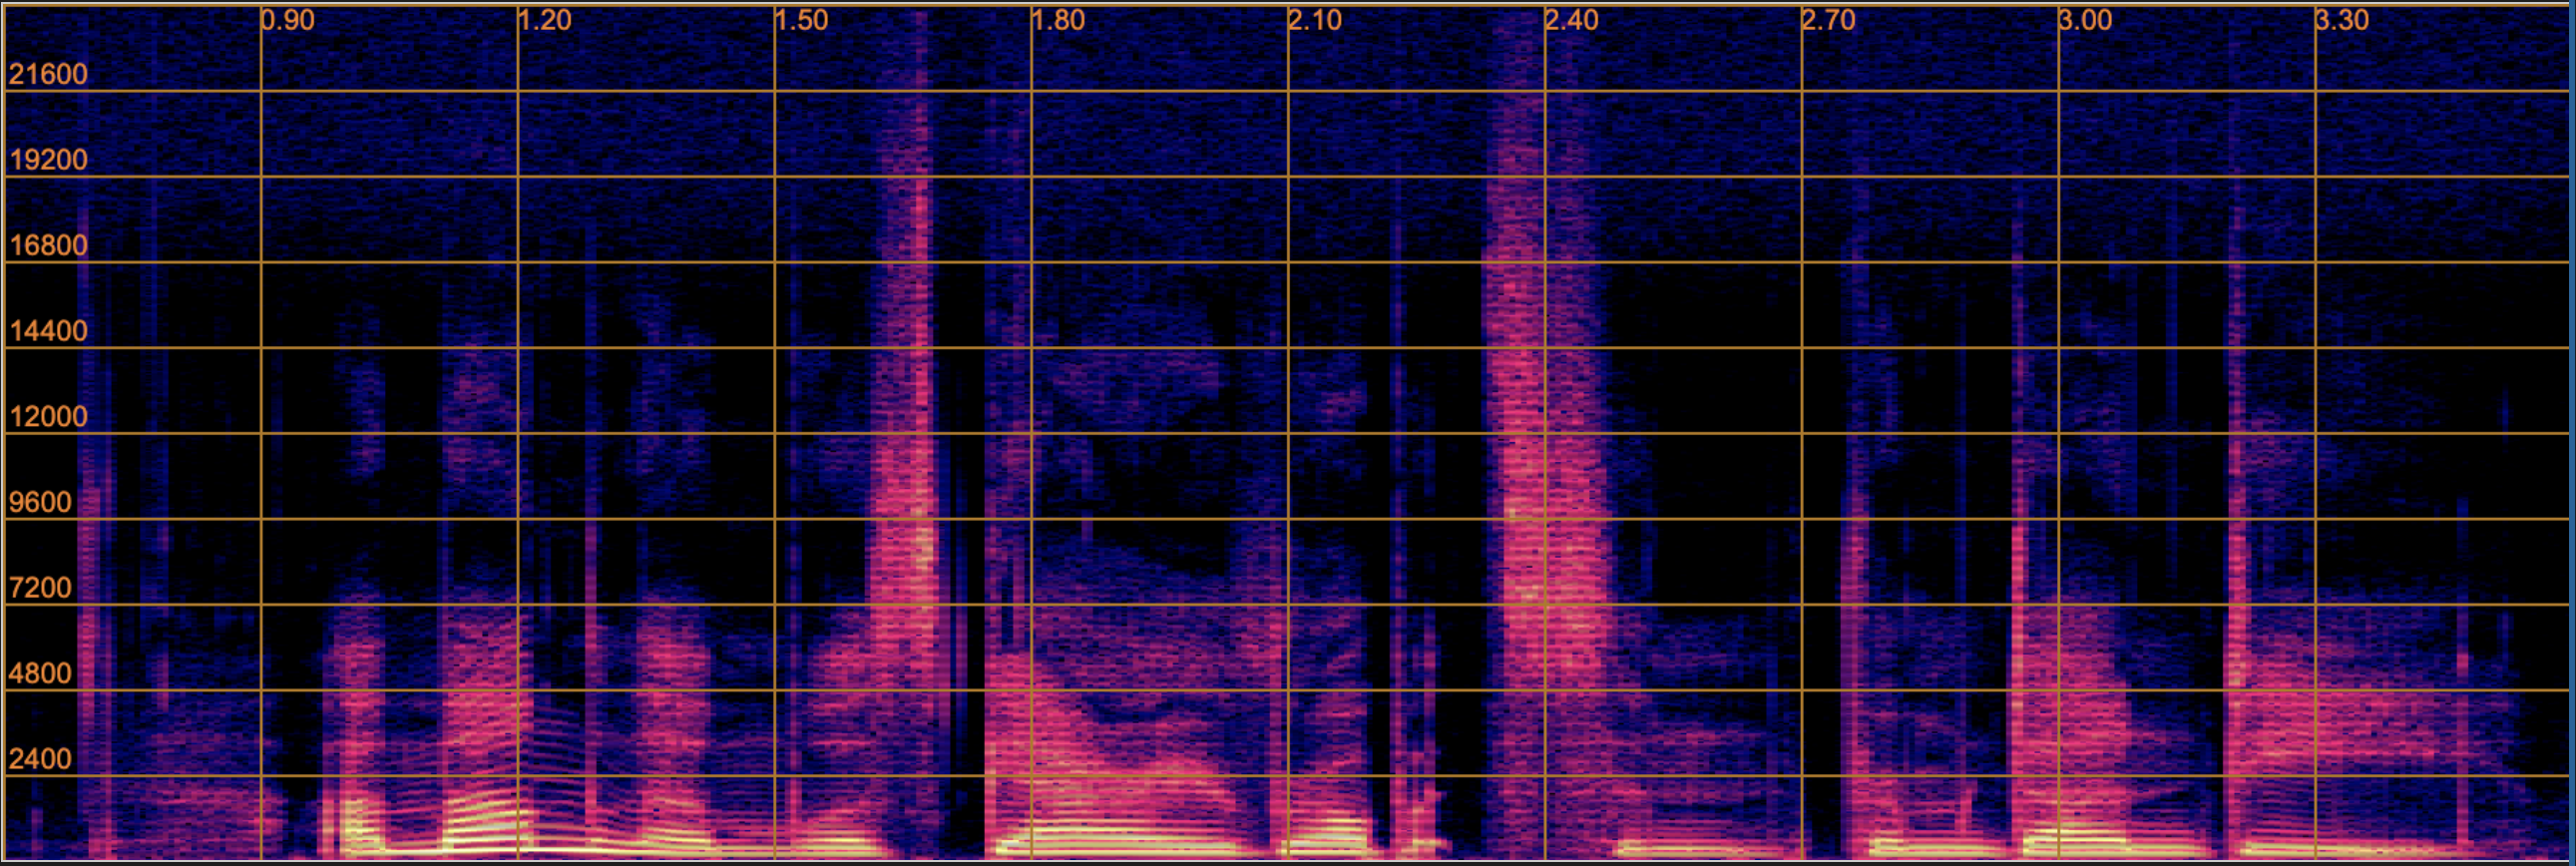 spectrogram of ground truth 48 kHz speech from target domain